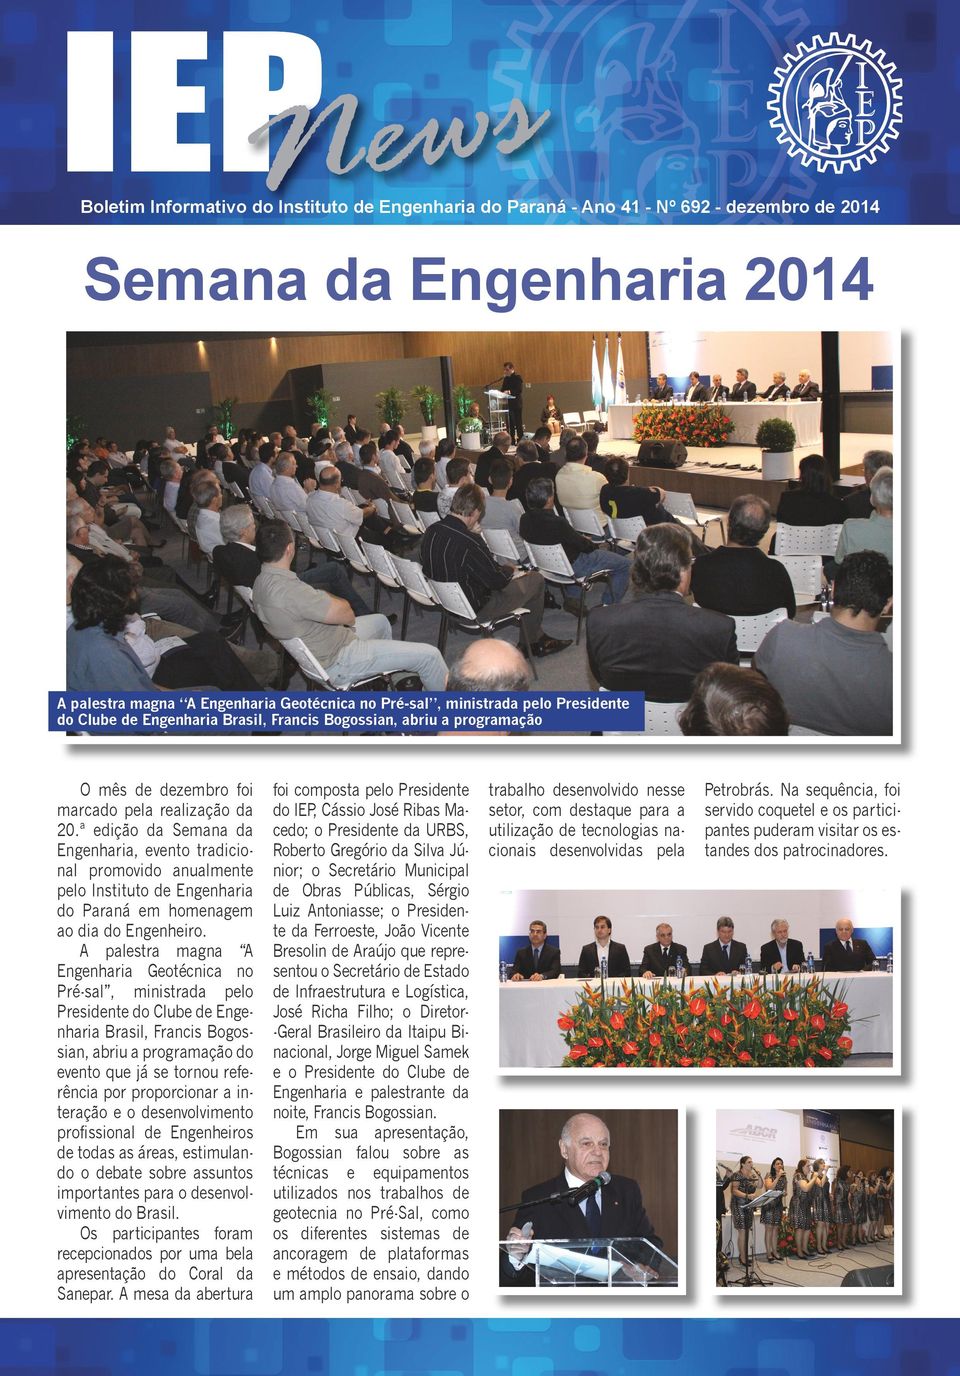 ª edição da Semana da Engenharia, evento tradicional promovido anualmente pelo Instituto de Engenharia do Paraná em homenagem ao dia do Engenheiro.